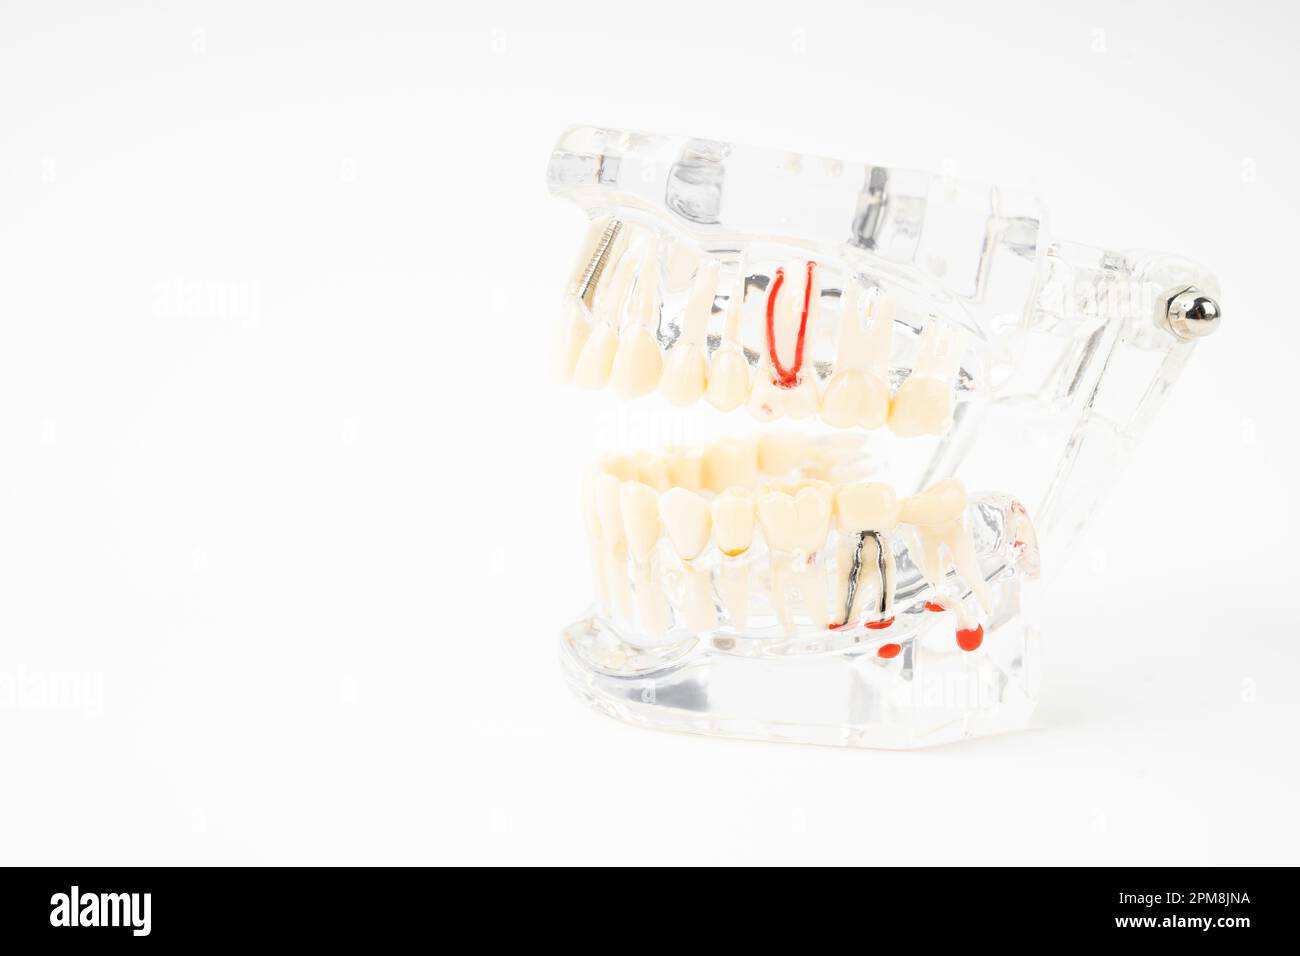 Les prothèses dentaires, les dents et les prothèses humaines sur fond blanc. Banque D'Images